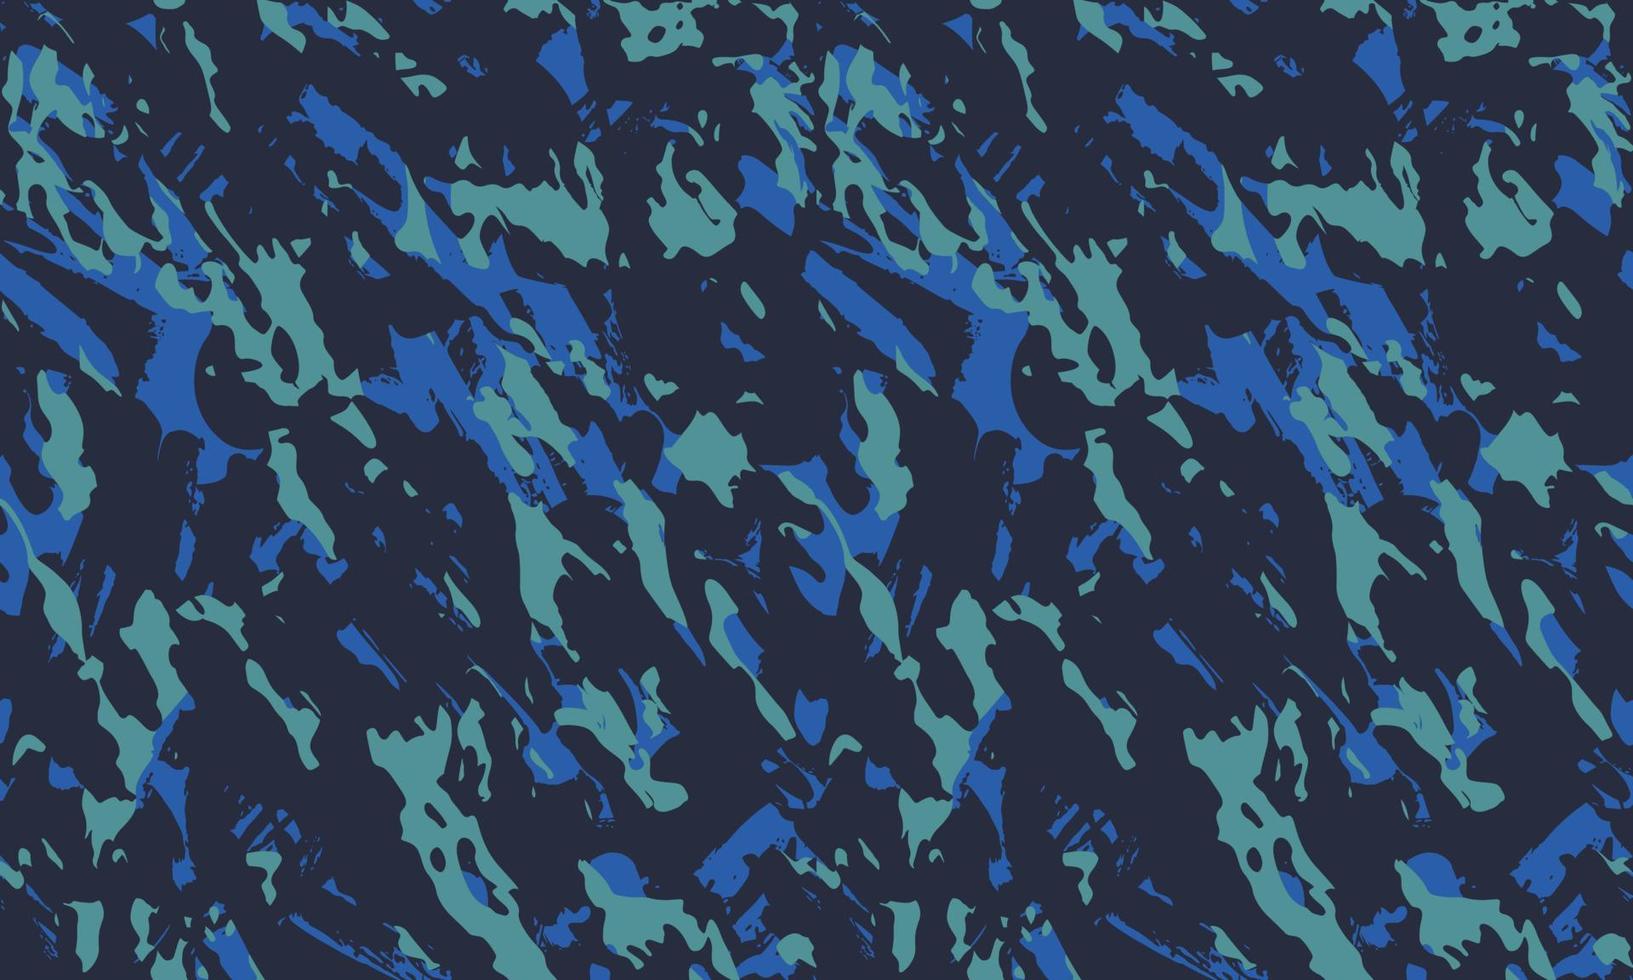 texture camouflage militaire illustration vectorielle continue motif de fond vecteur